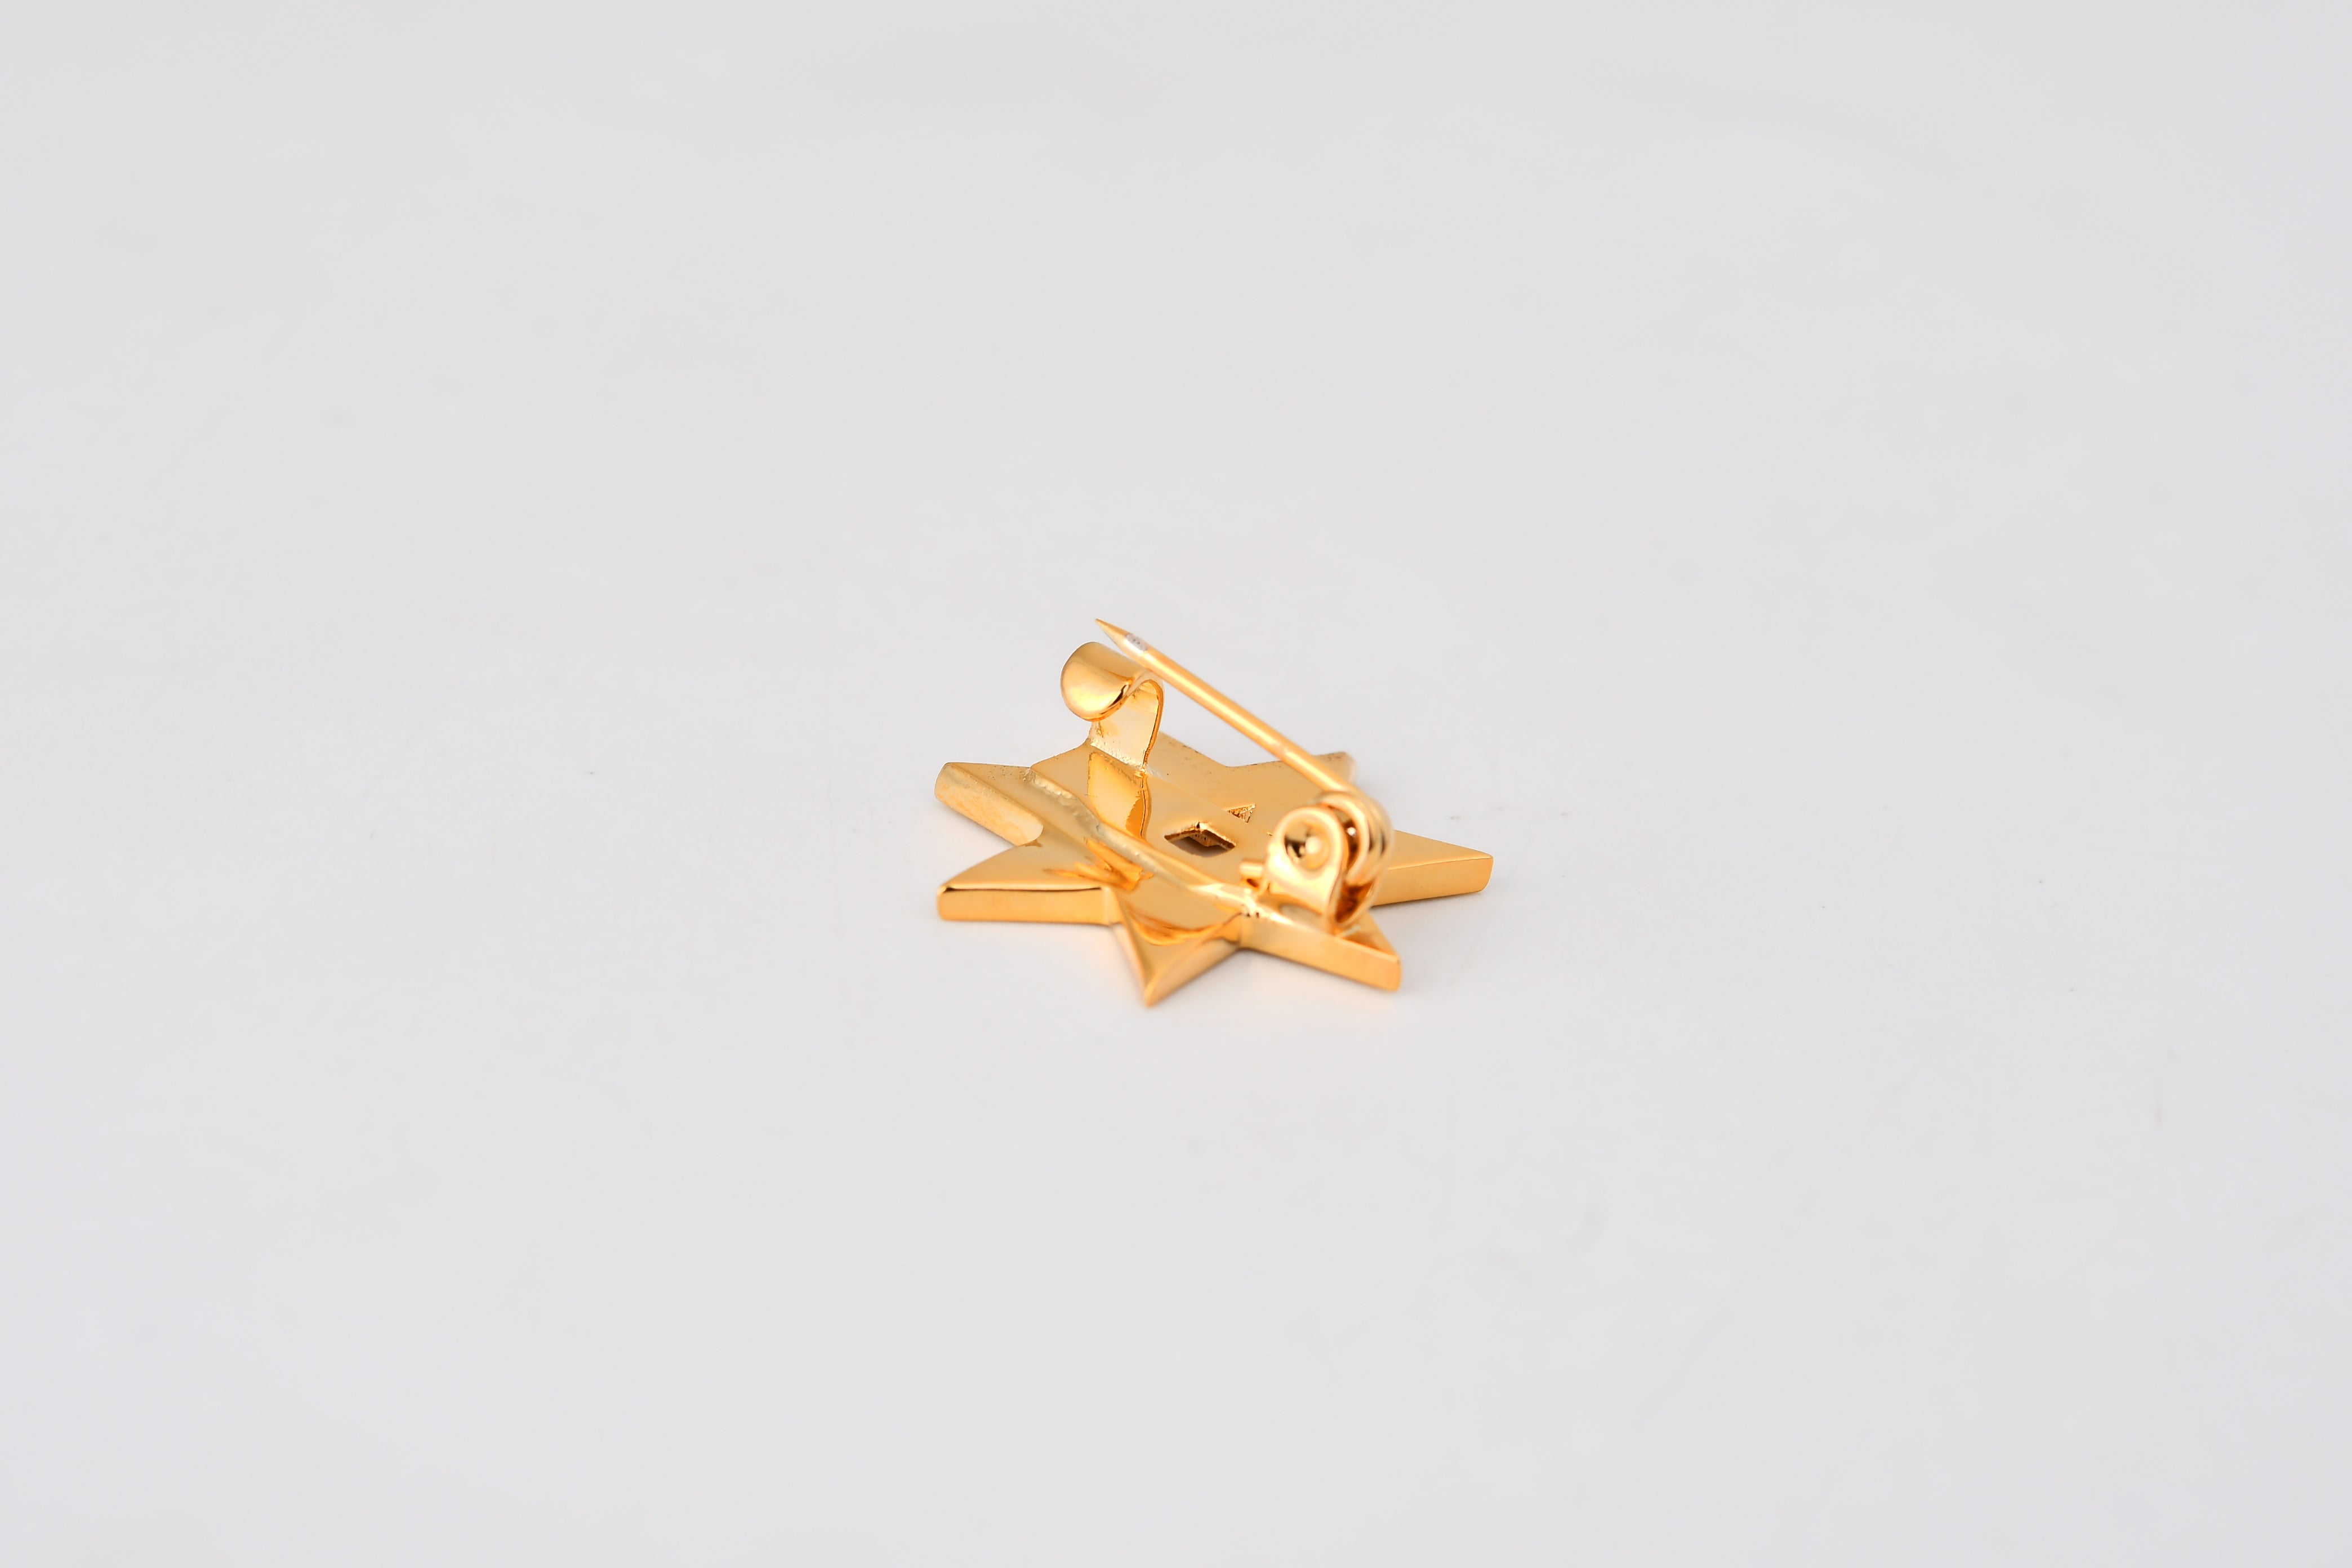 Gold Plated Jordan Star 3D Brooch